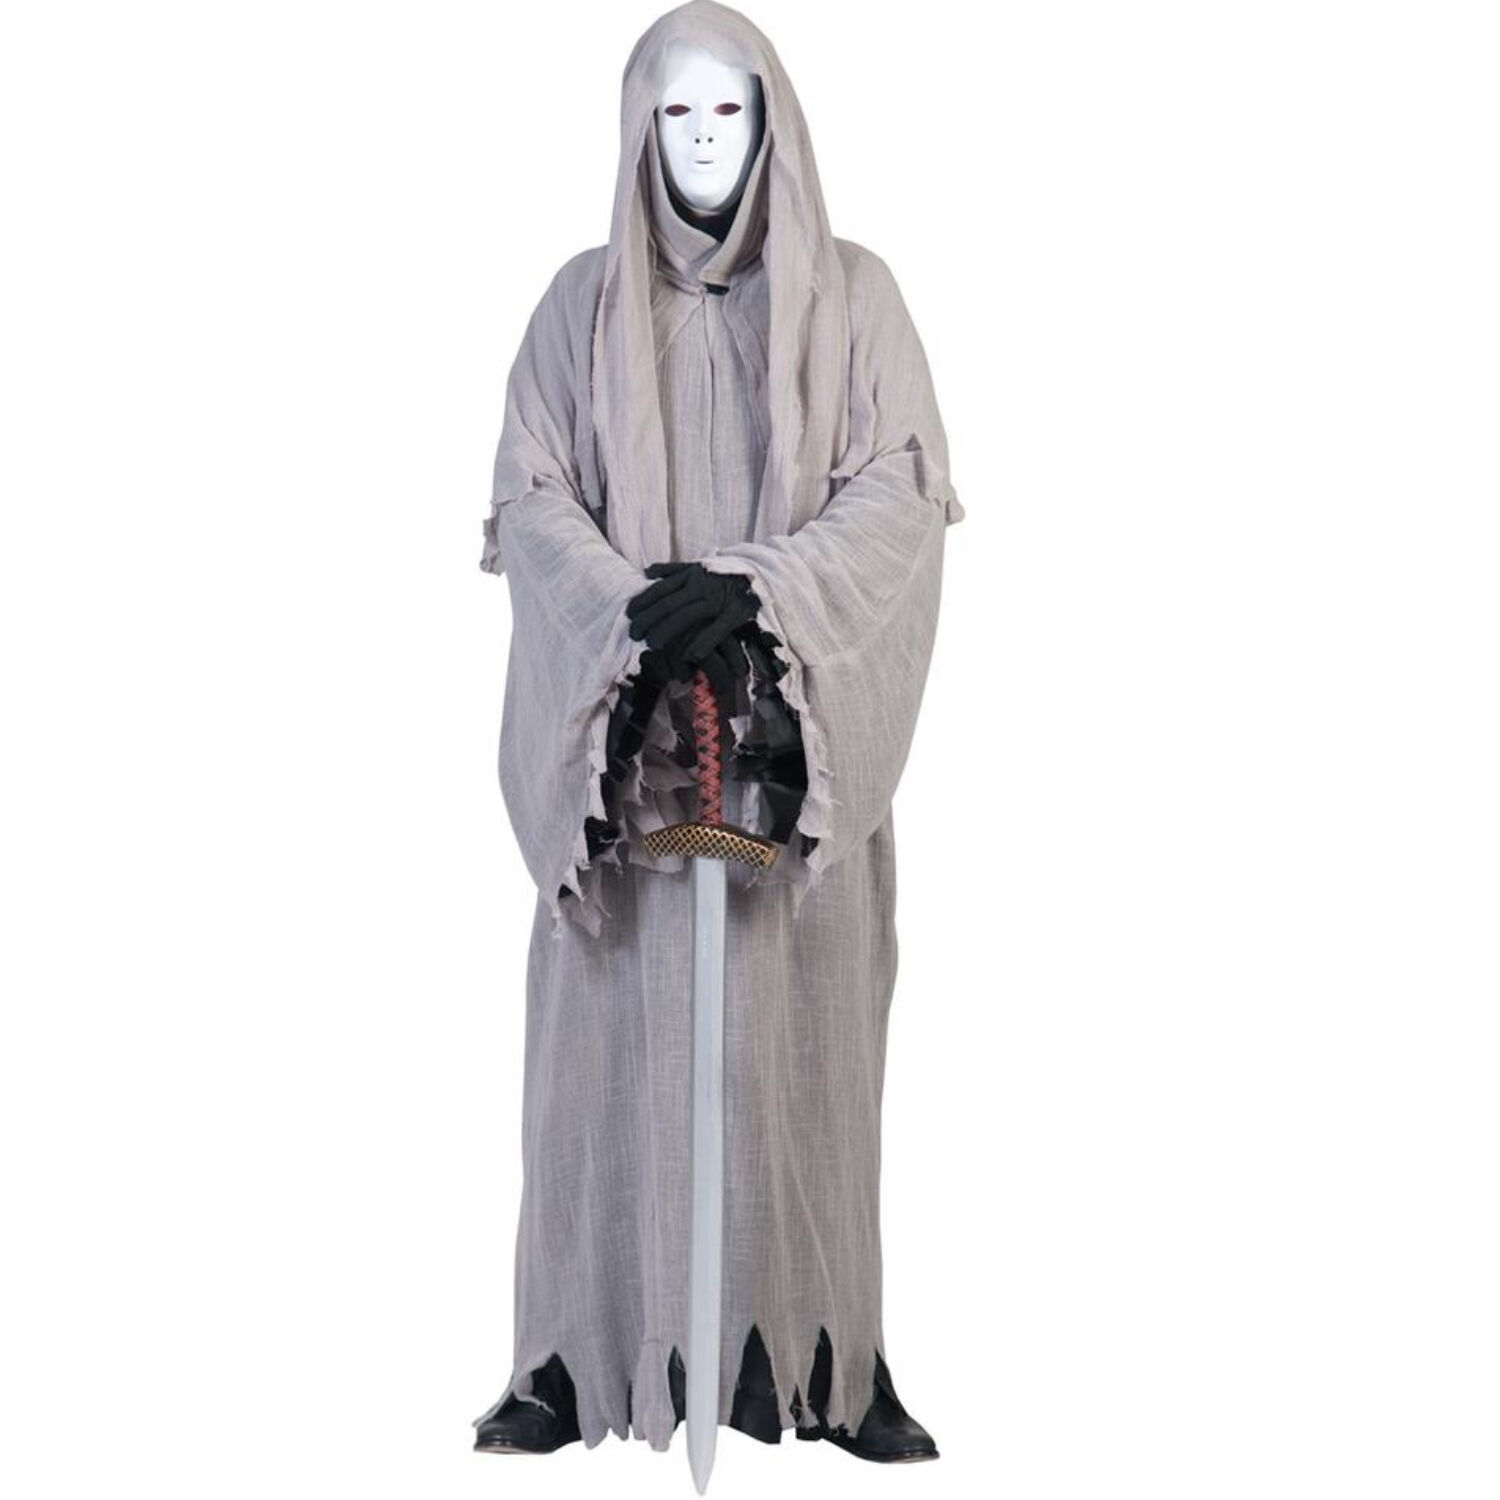 NEU Herren-Kostüm Halloween-Ghost grau, mit Kapuze, Einheitsgröße